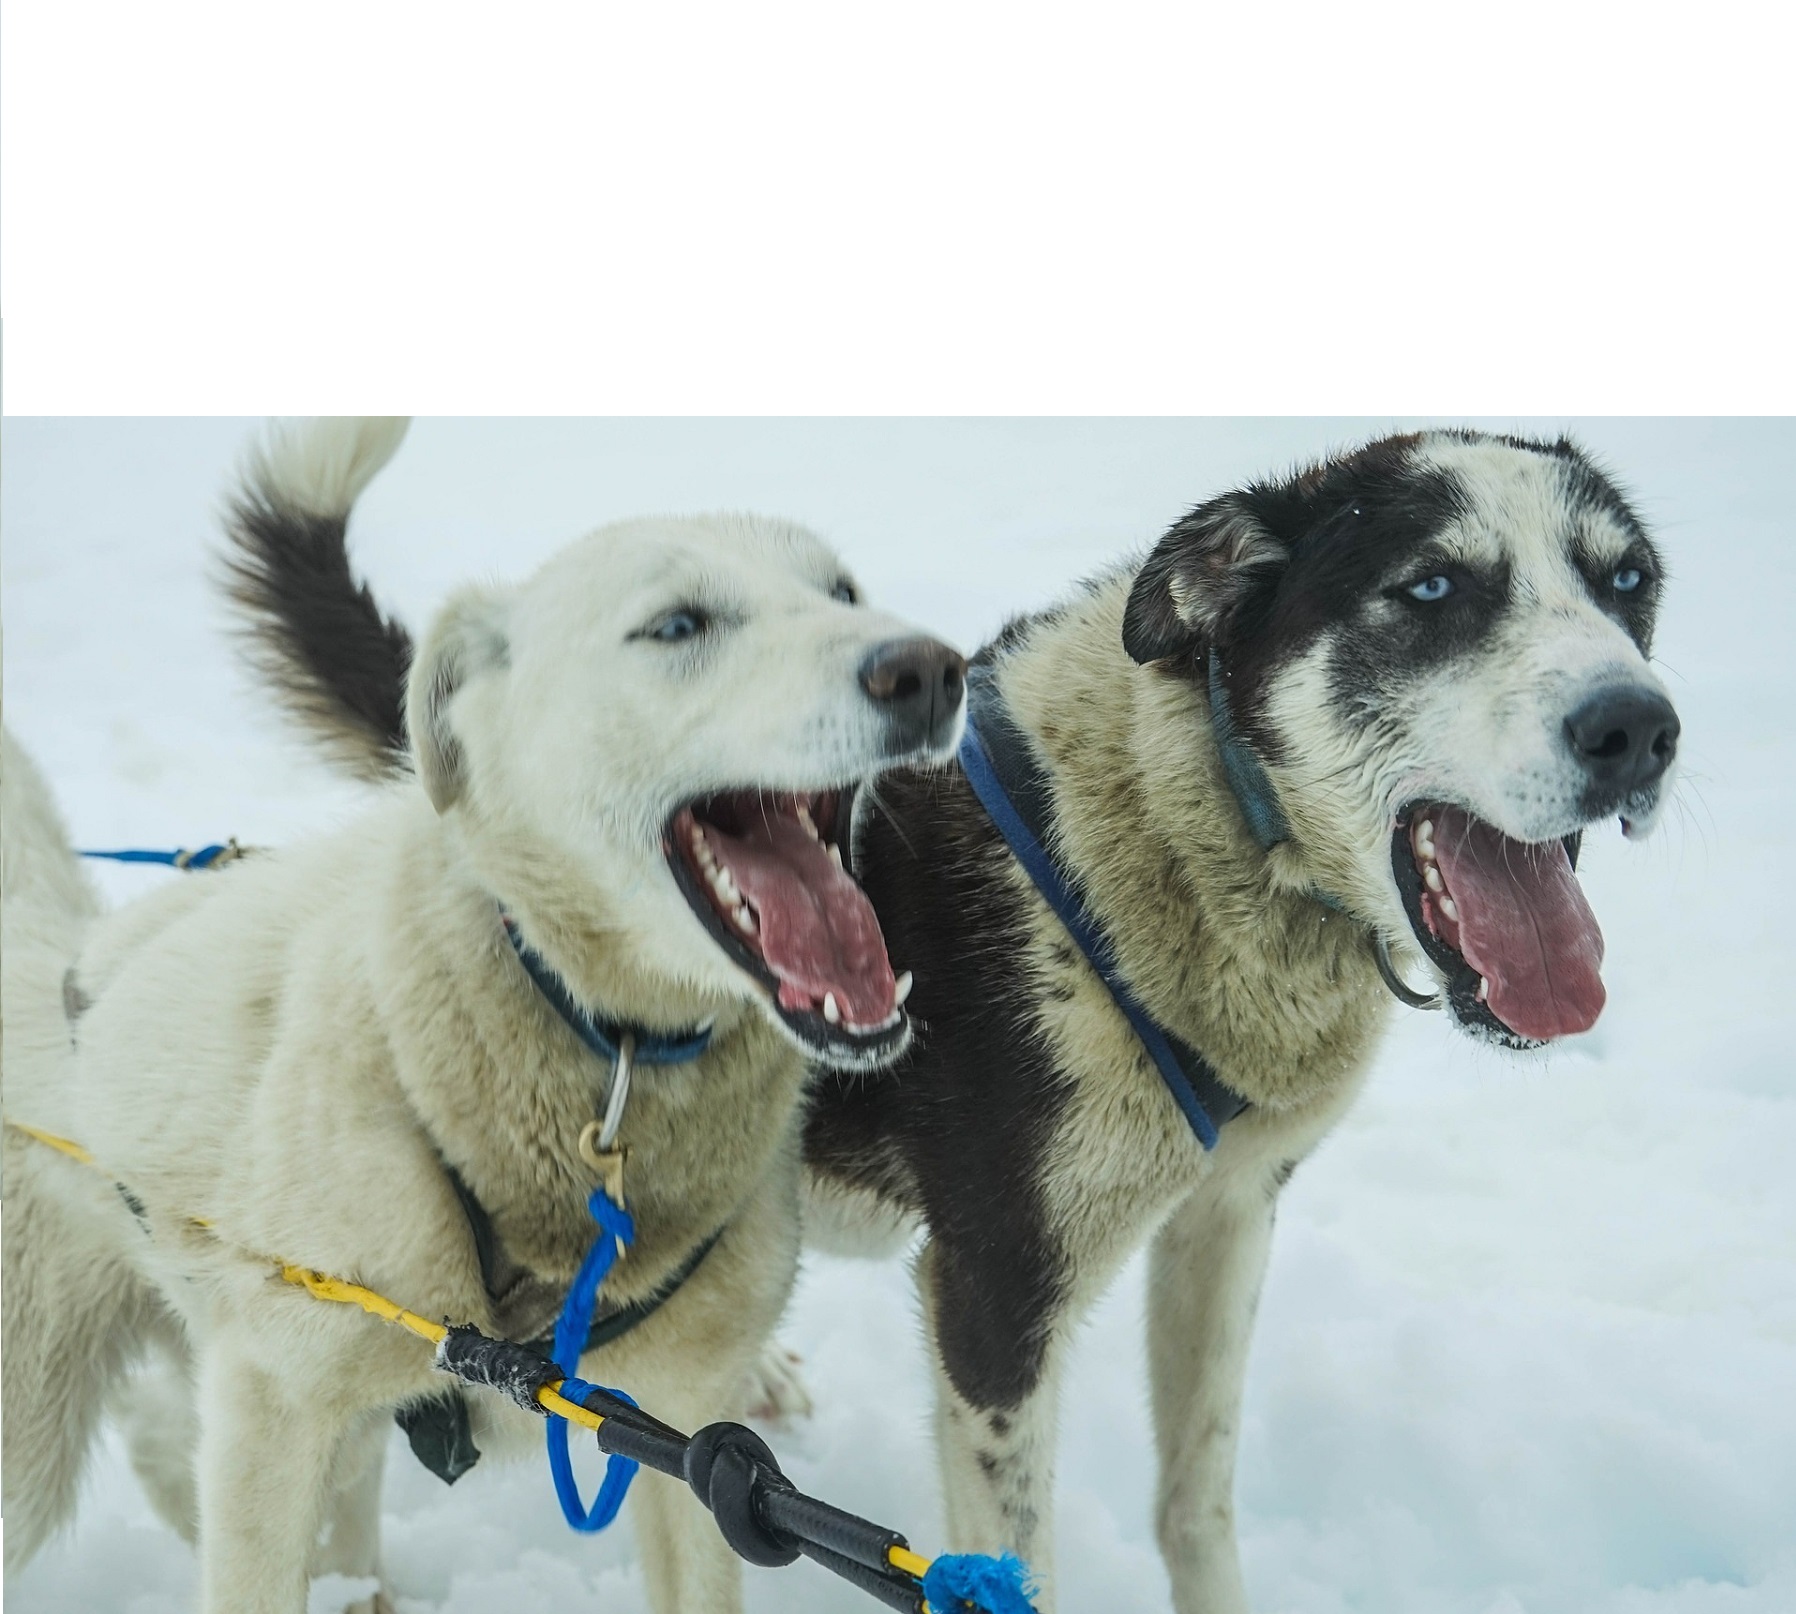 Лай - один из способов общения собак. Для четвероногих это выражение радости и тревоги.